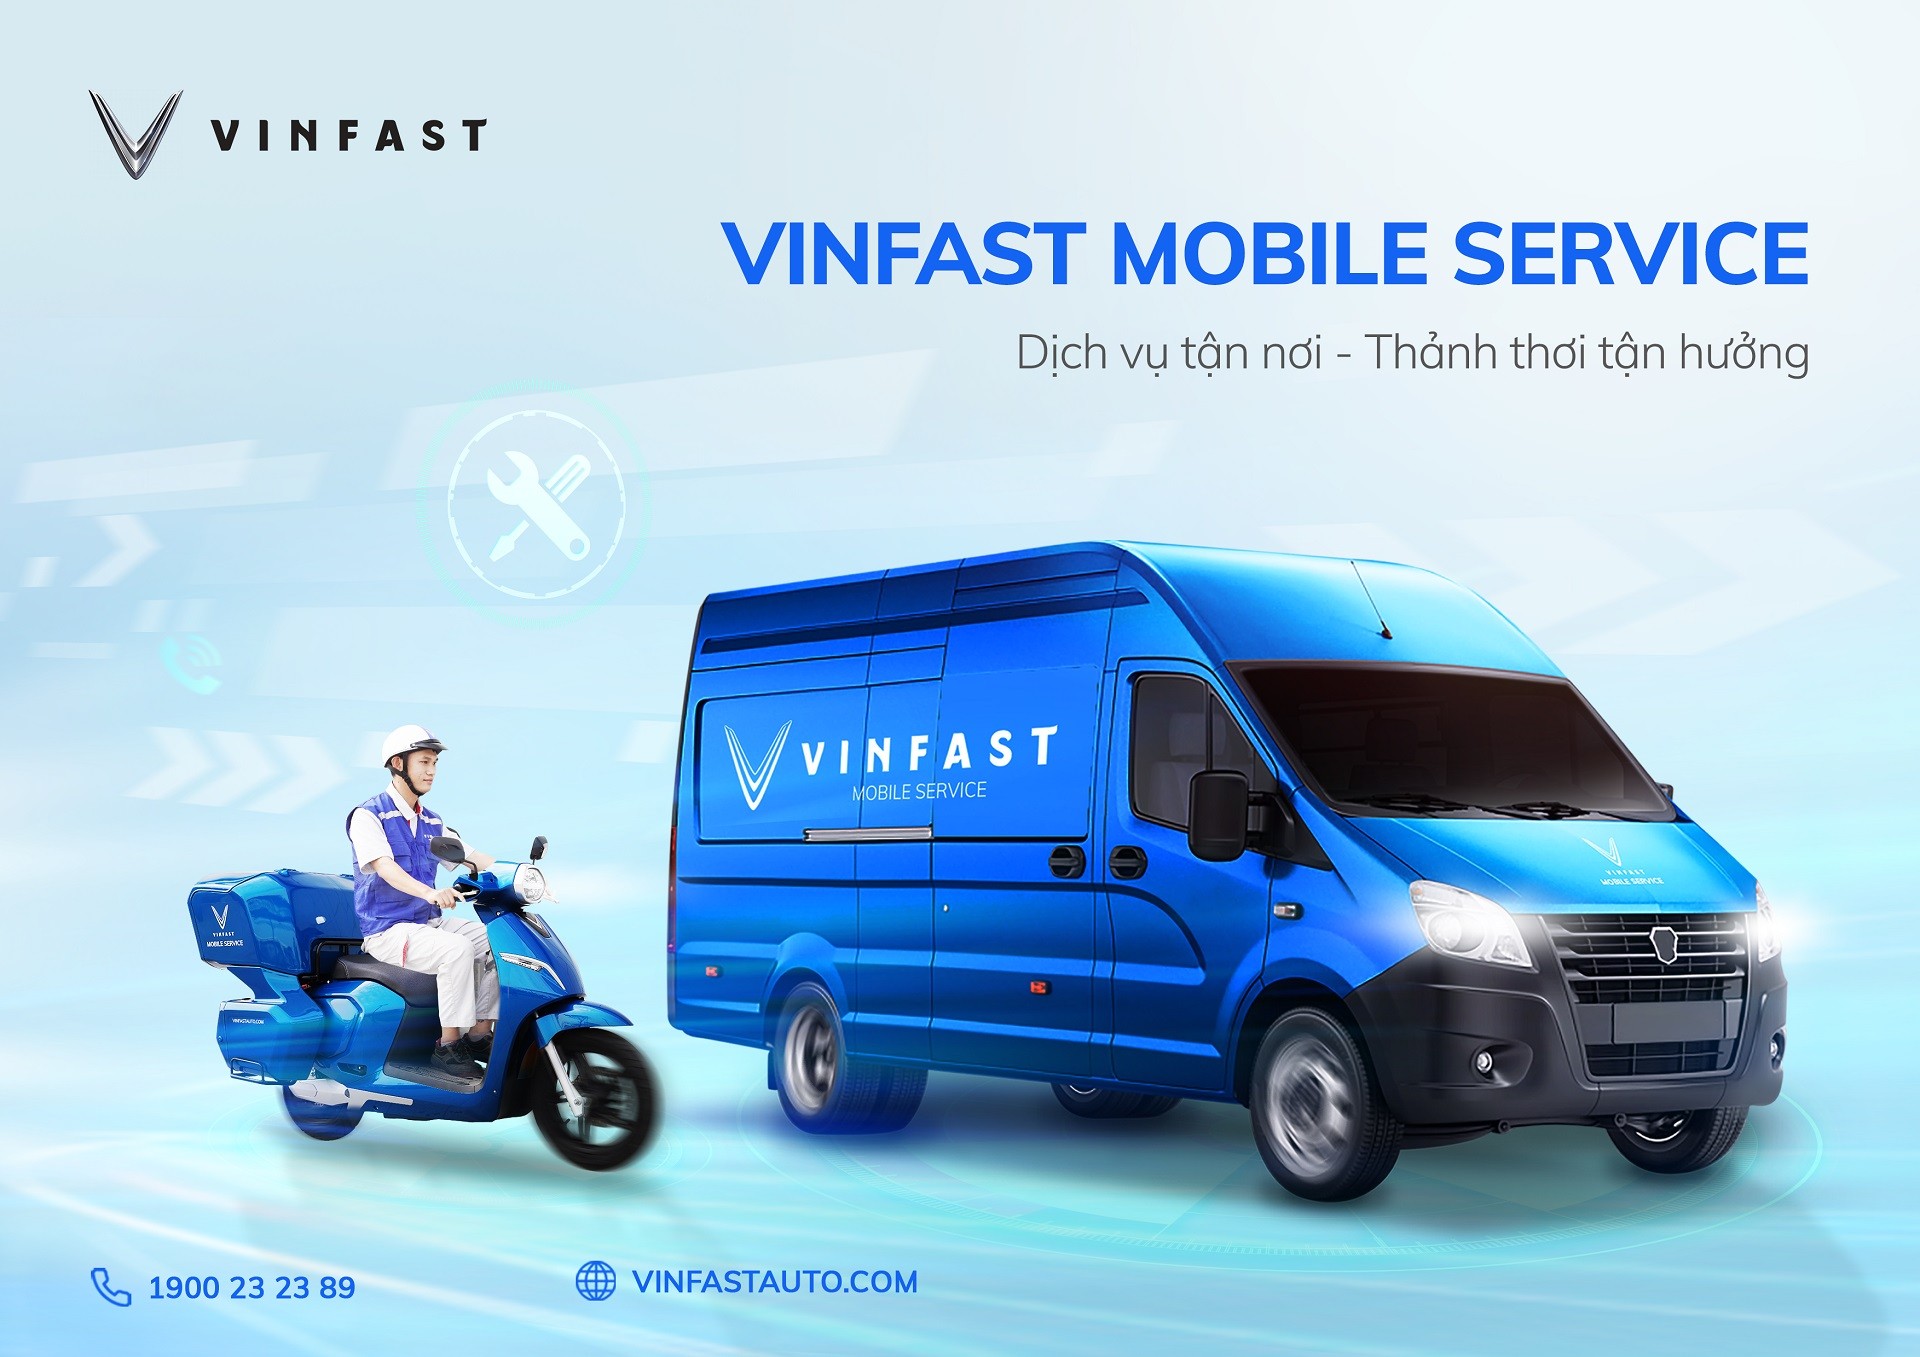 vf-mobile-service-1-1641452840.jpg